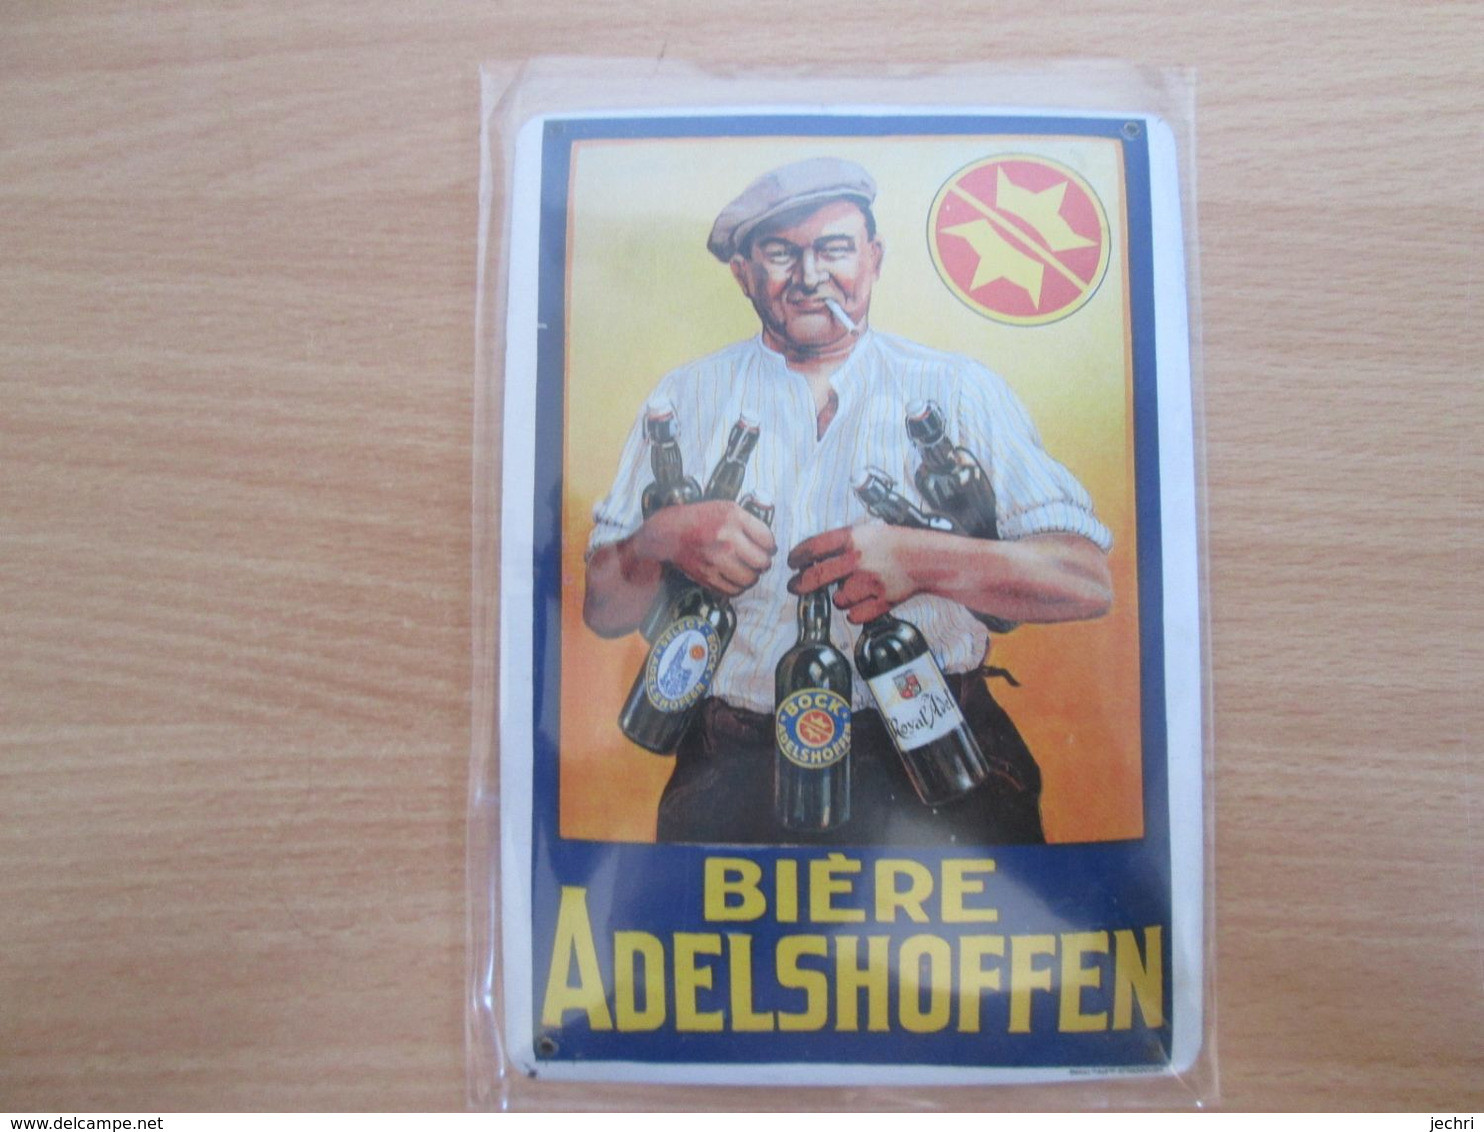 Petite Tole Publicitaire Biere Adelshoffen  . Format Carte Postale - Enseignes